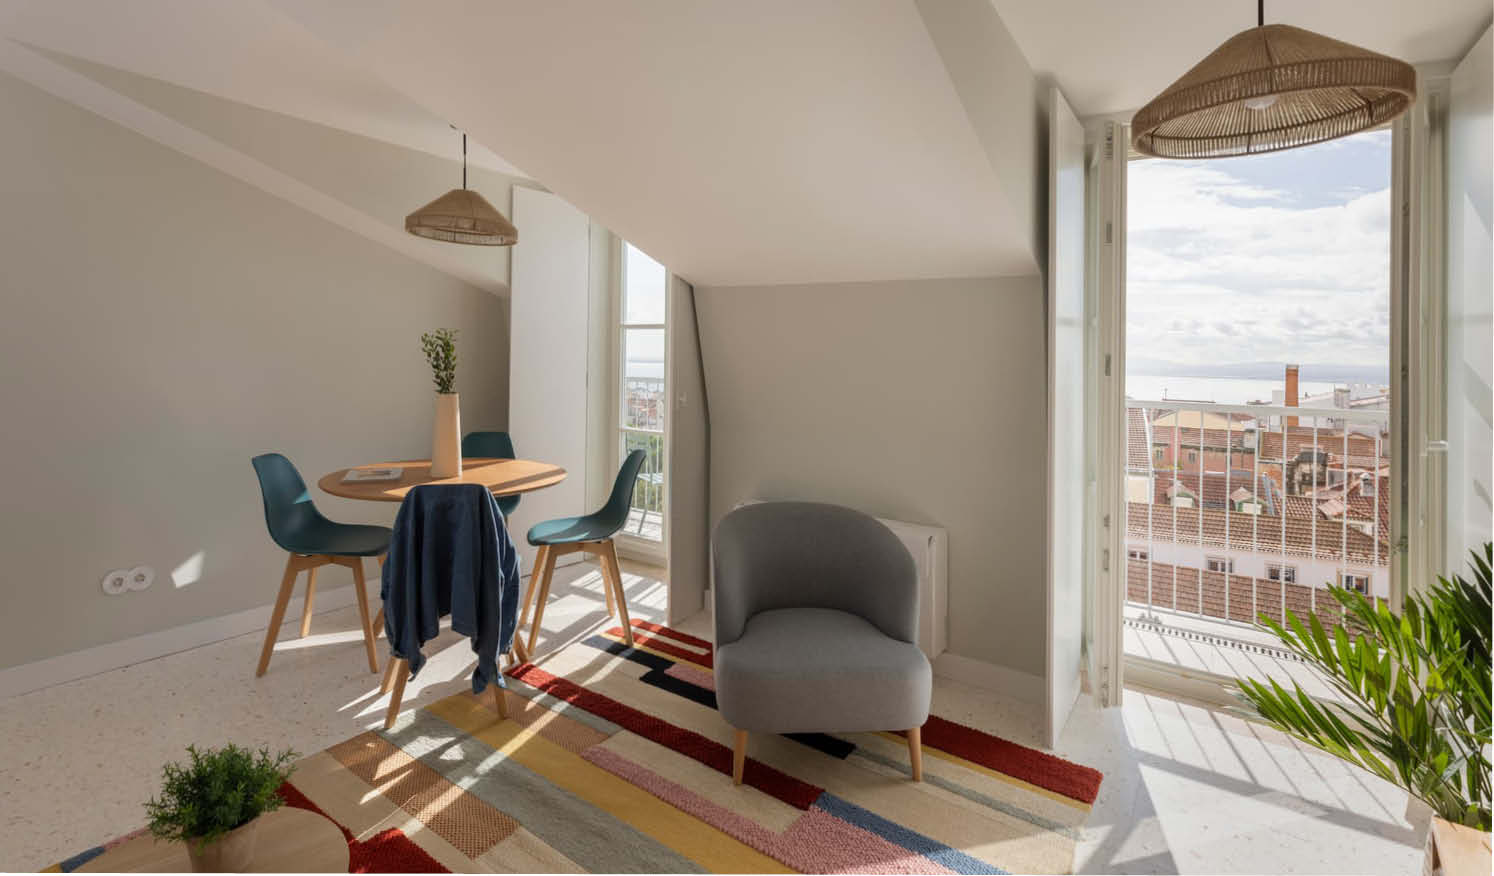 Apartamentos Líbere Lisboa_Salón con mobiliario a medida y estándar